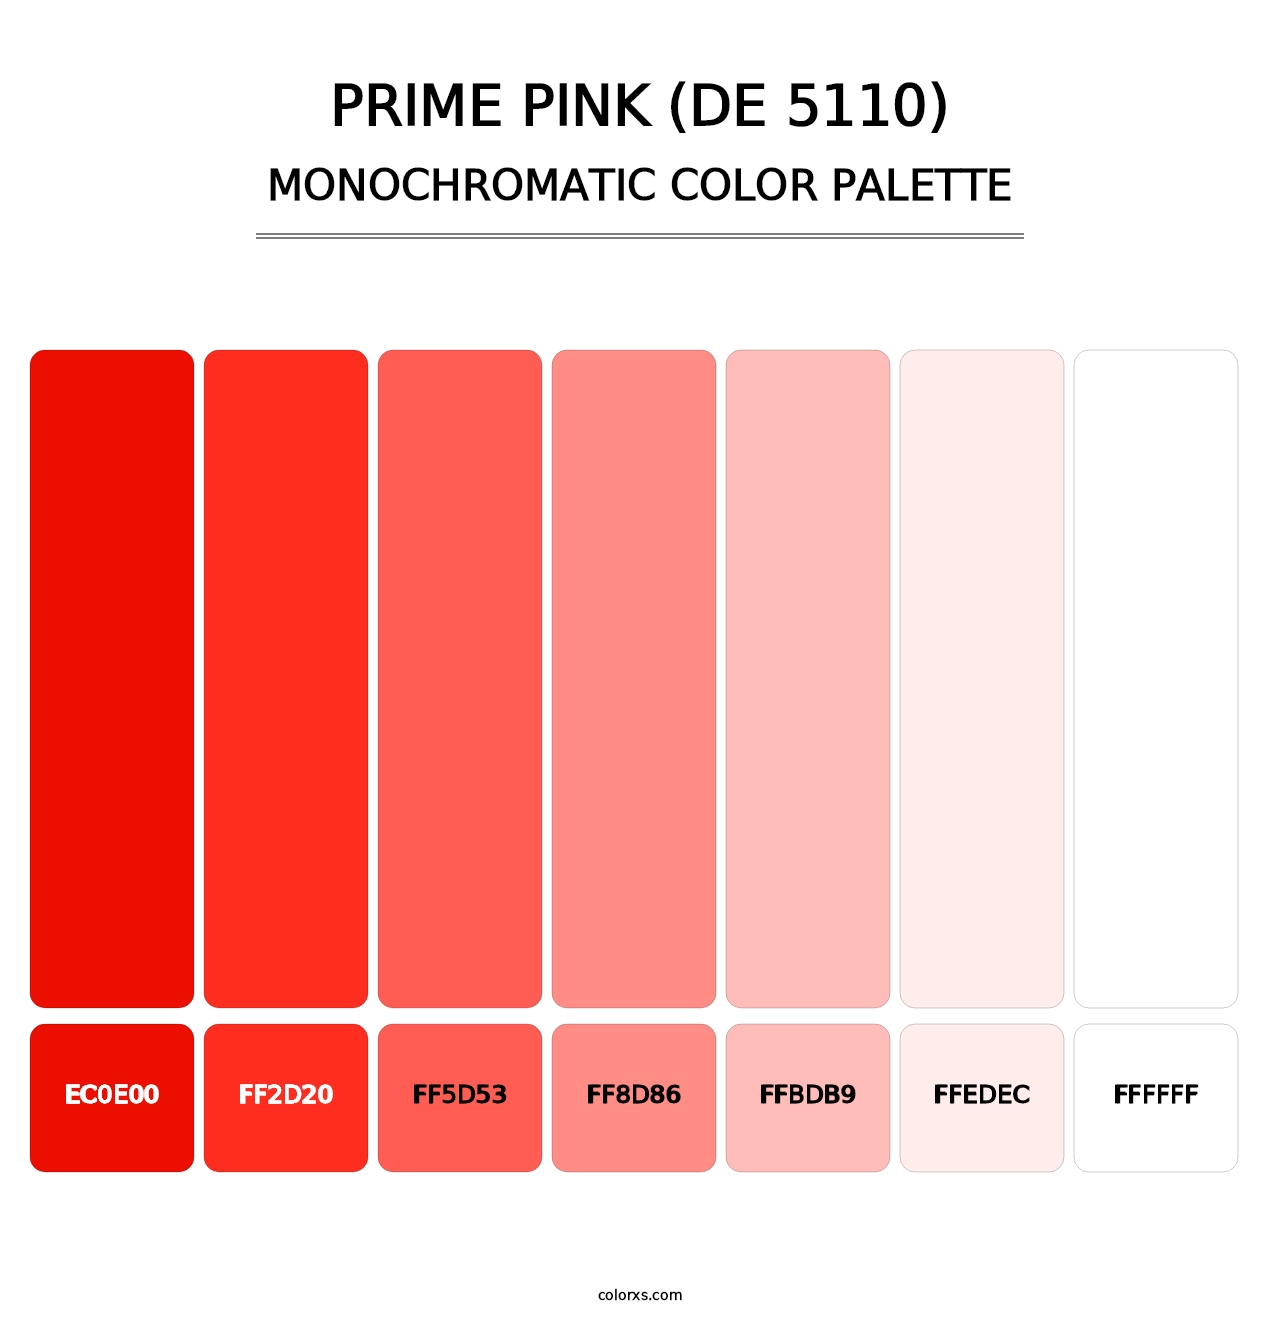 Prime Pink (DE 5110) - Monochromatic Color Palette